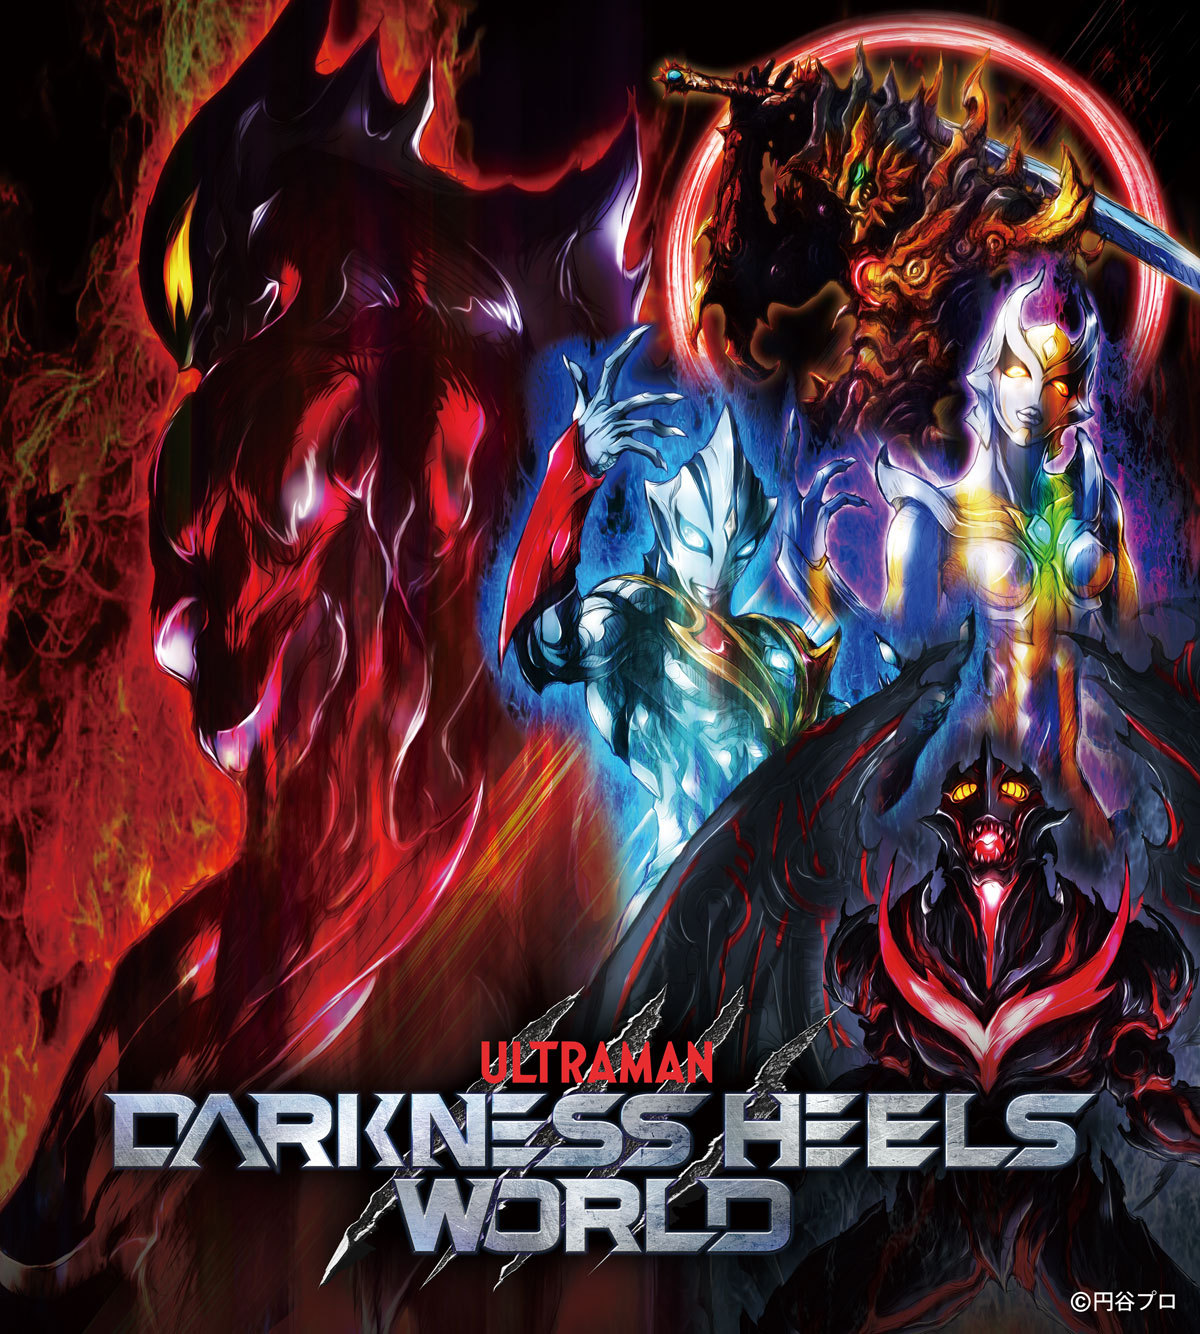 ダークヒーローたちの闇のイベント Darkness Heels World が10 19 土 より東京ソラマチ で開催決定 土日祝にはdarkness Heelsショーも 円谷ステーション